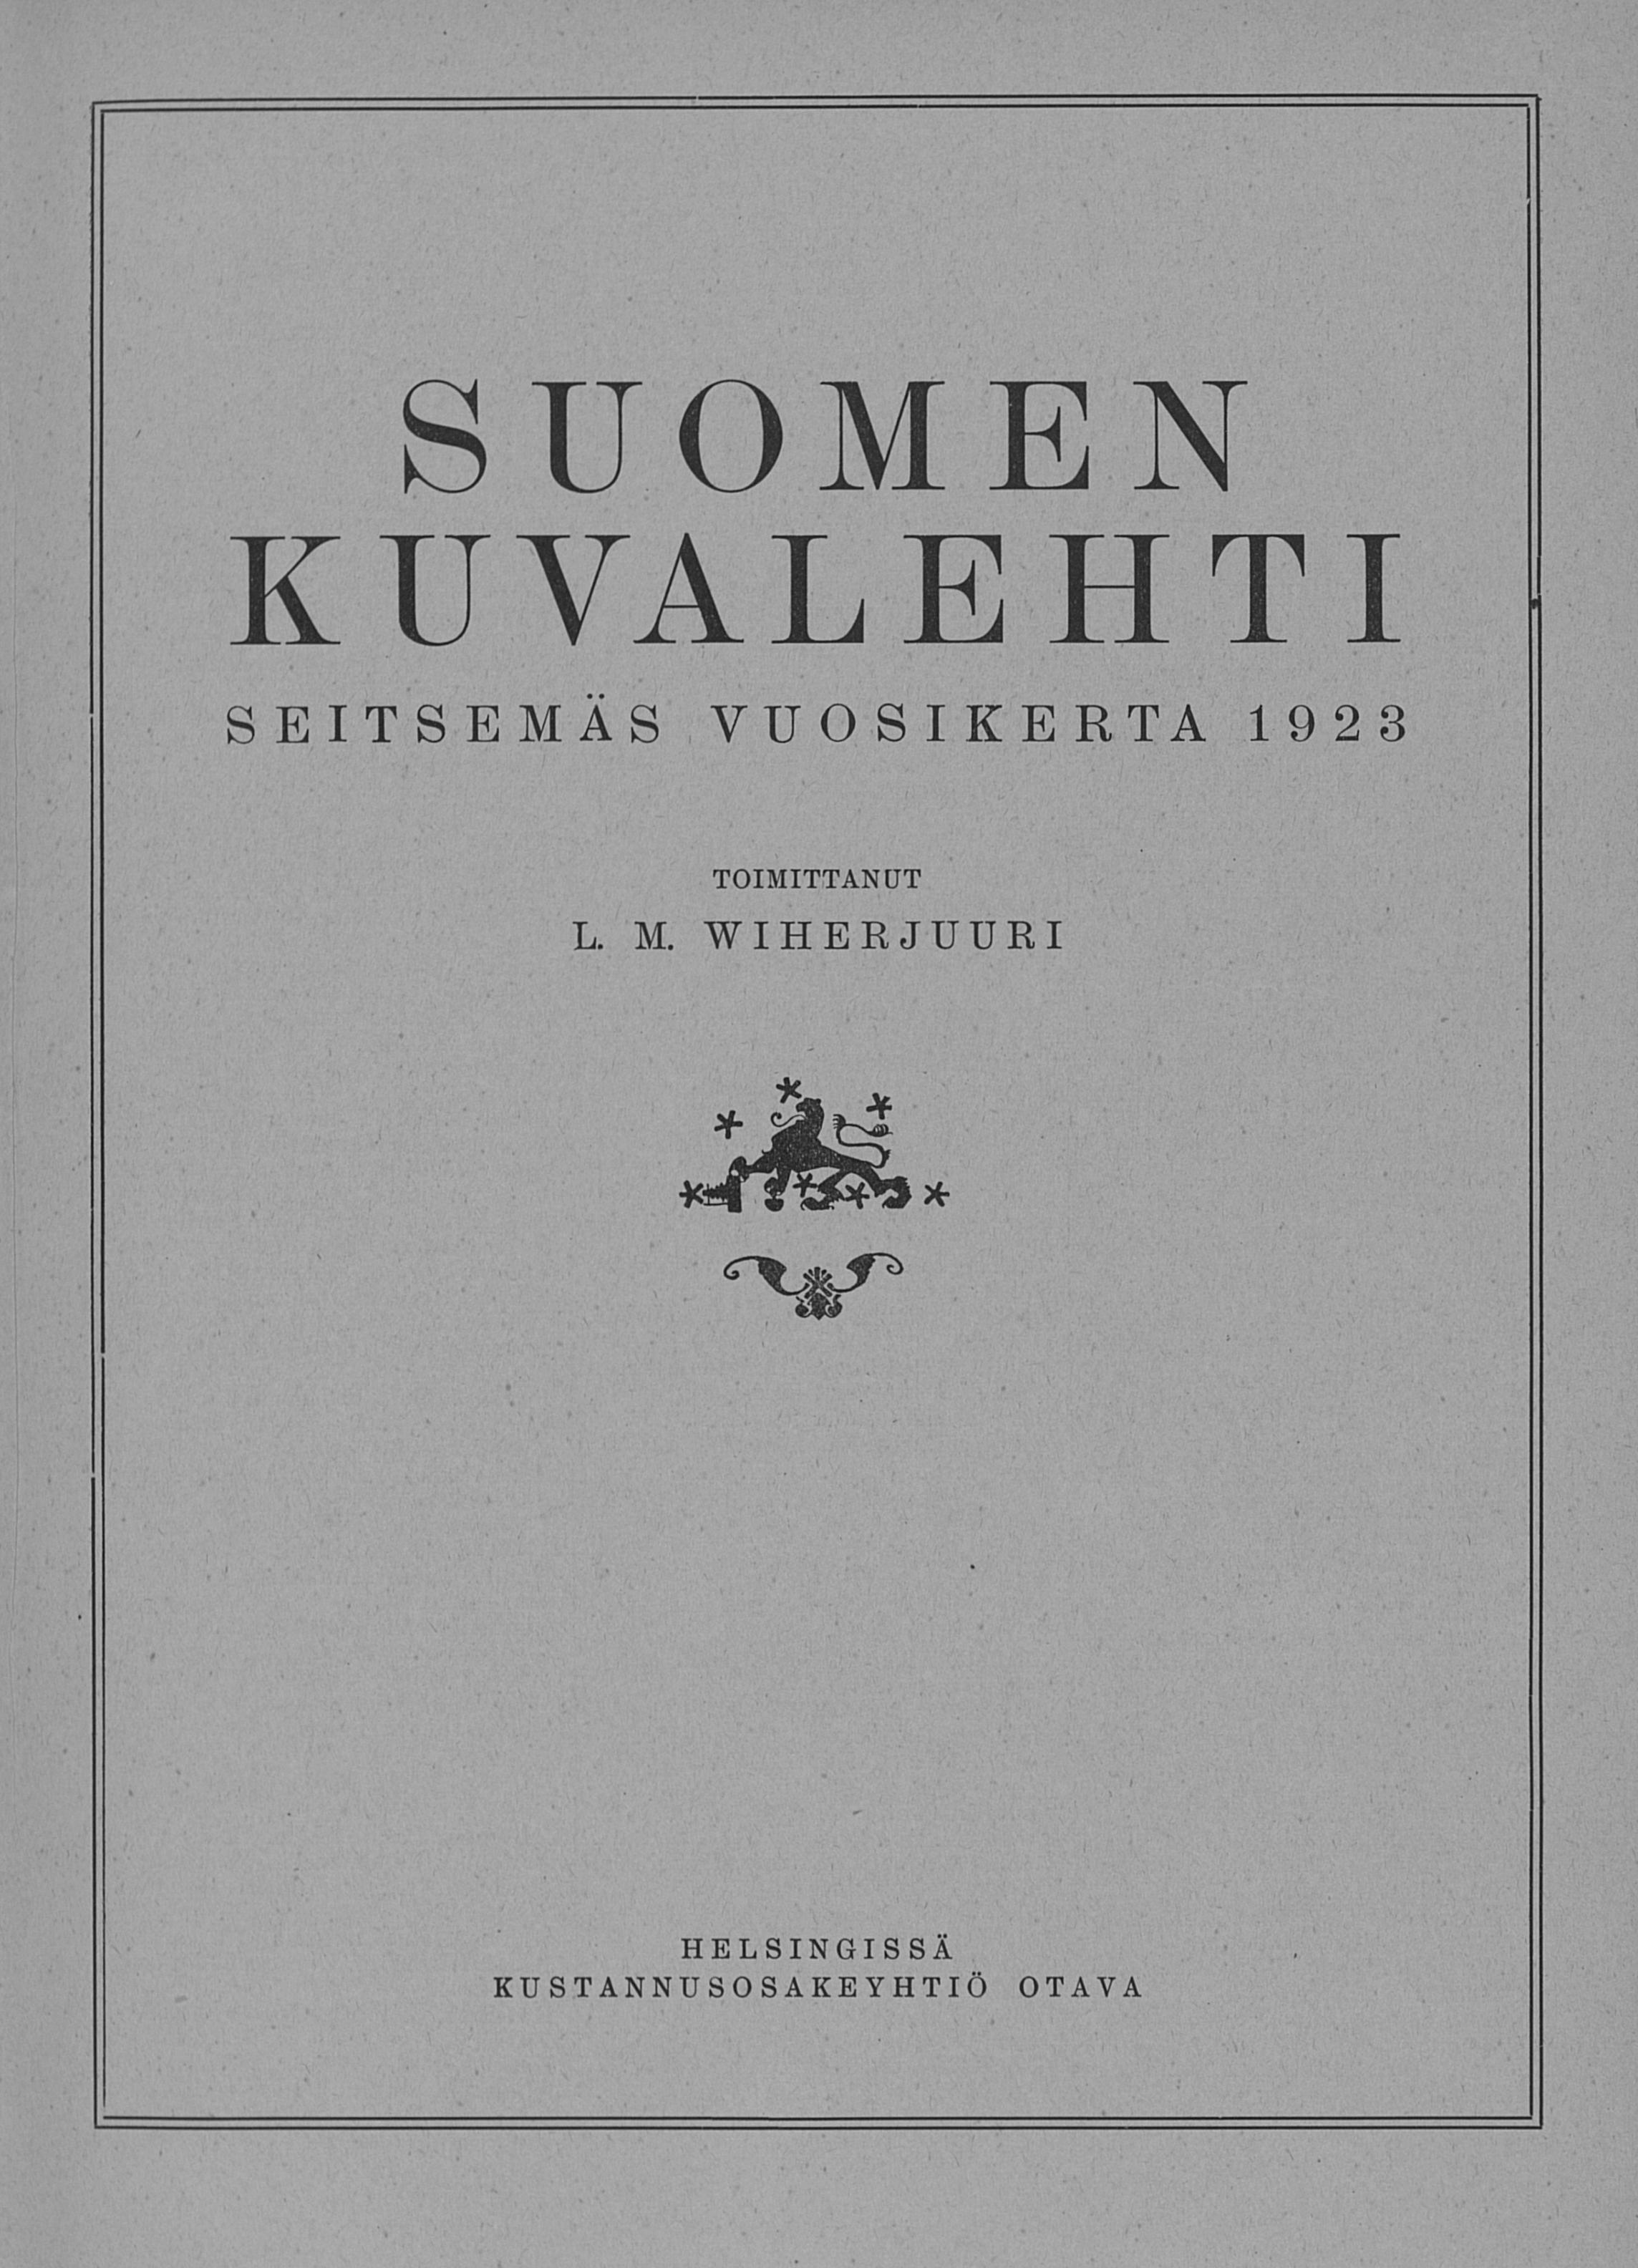  Suomen Kuvalehti no 1 - Digitaaliset aineistot -  Kansalliskirjasto